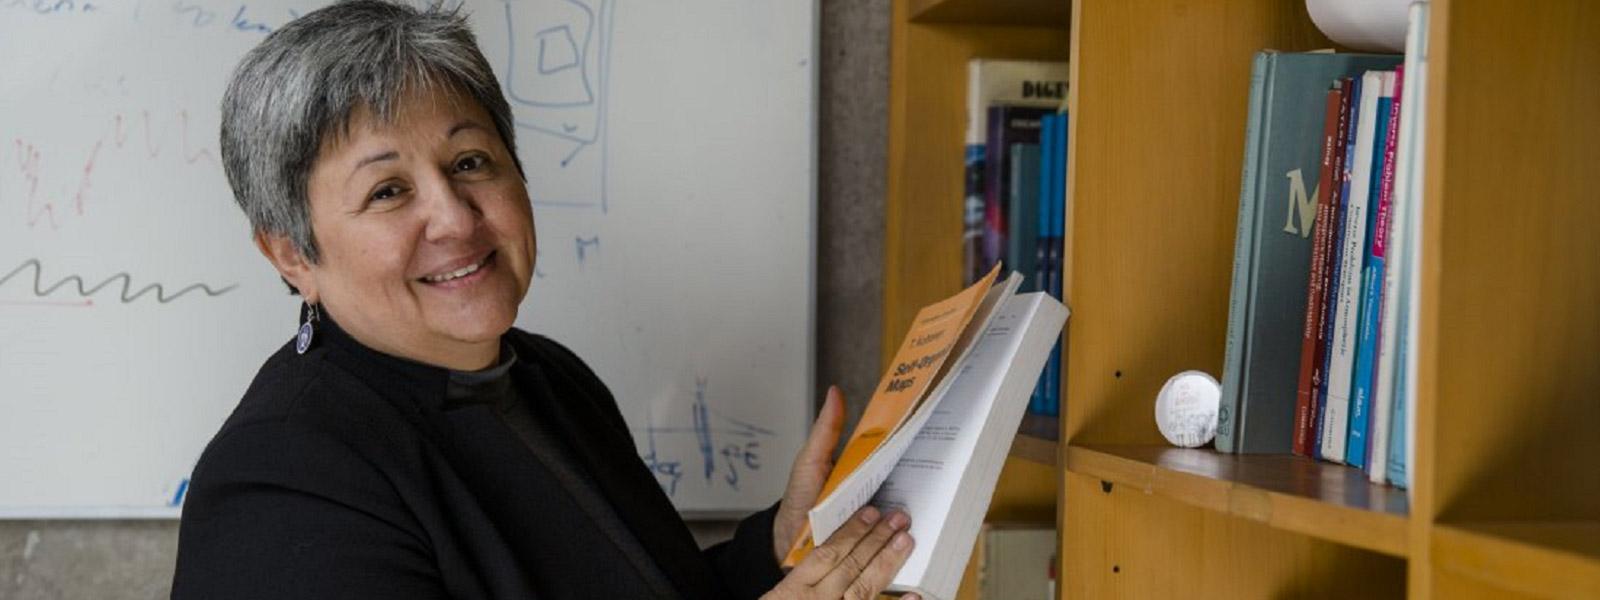 La nueva directora del Departamento de Postgrado y Postítulo de la Universidad de Chile, Laura Gallardo, aseguró que trabajará para “potenciar el rol de los y las estudiantes de postgrado en su formación y actividad de investigación”.